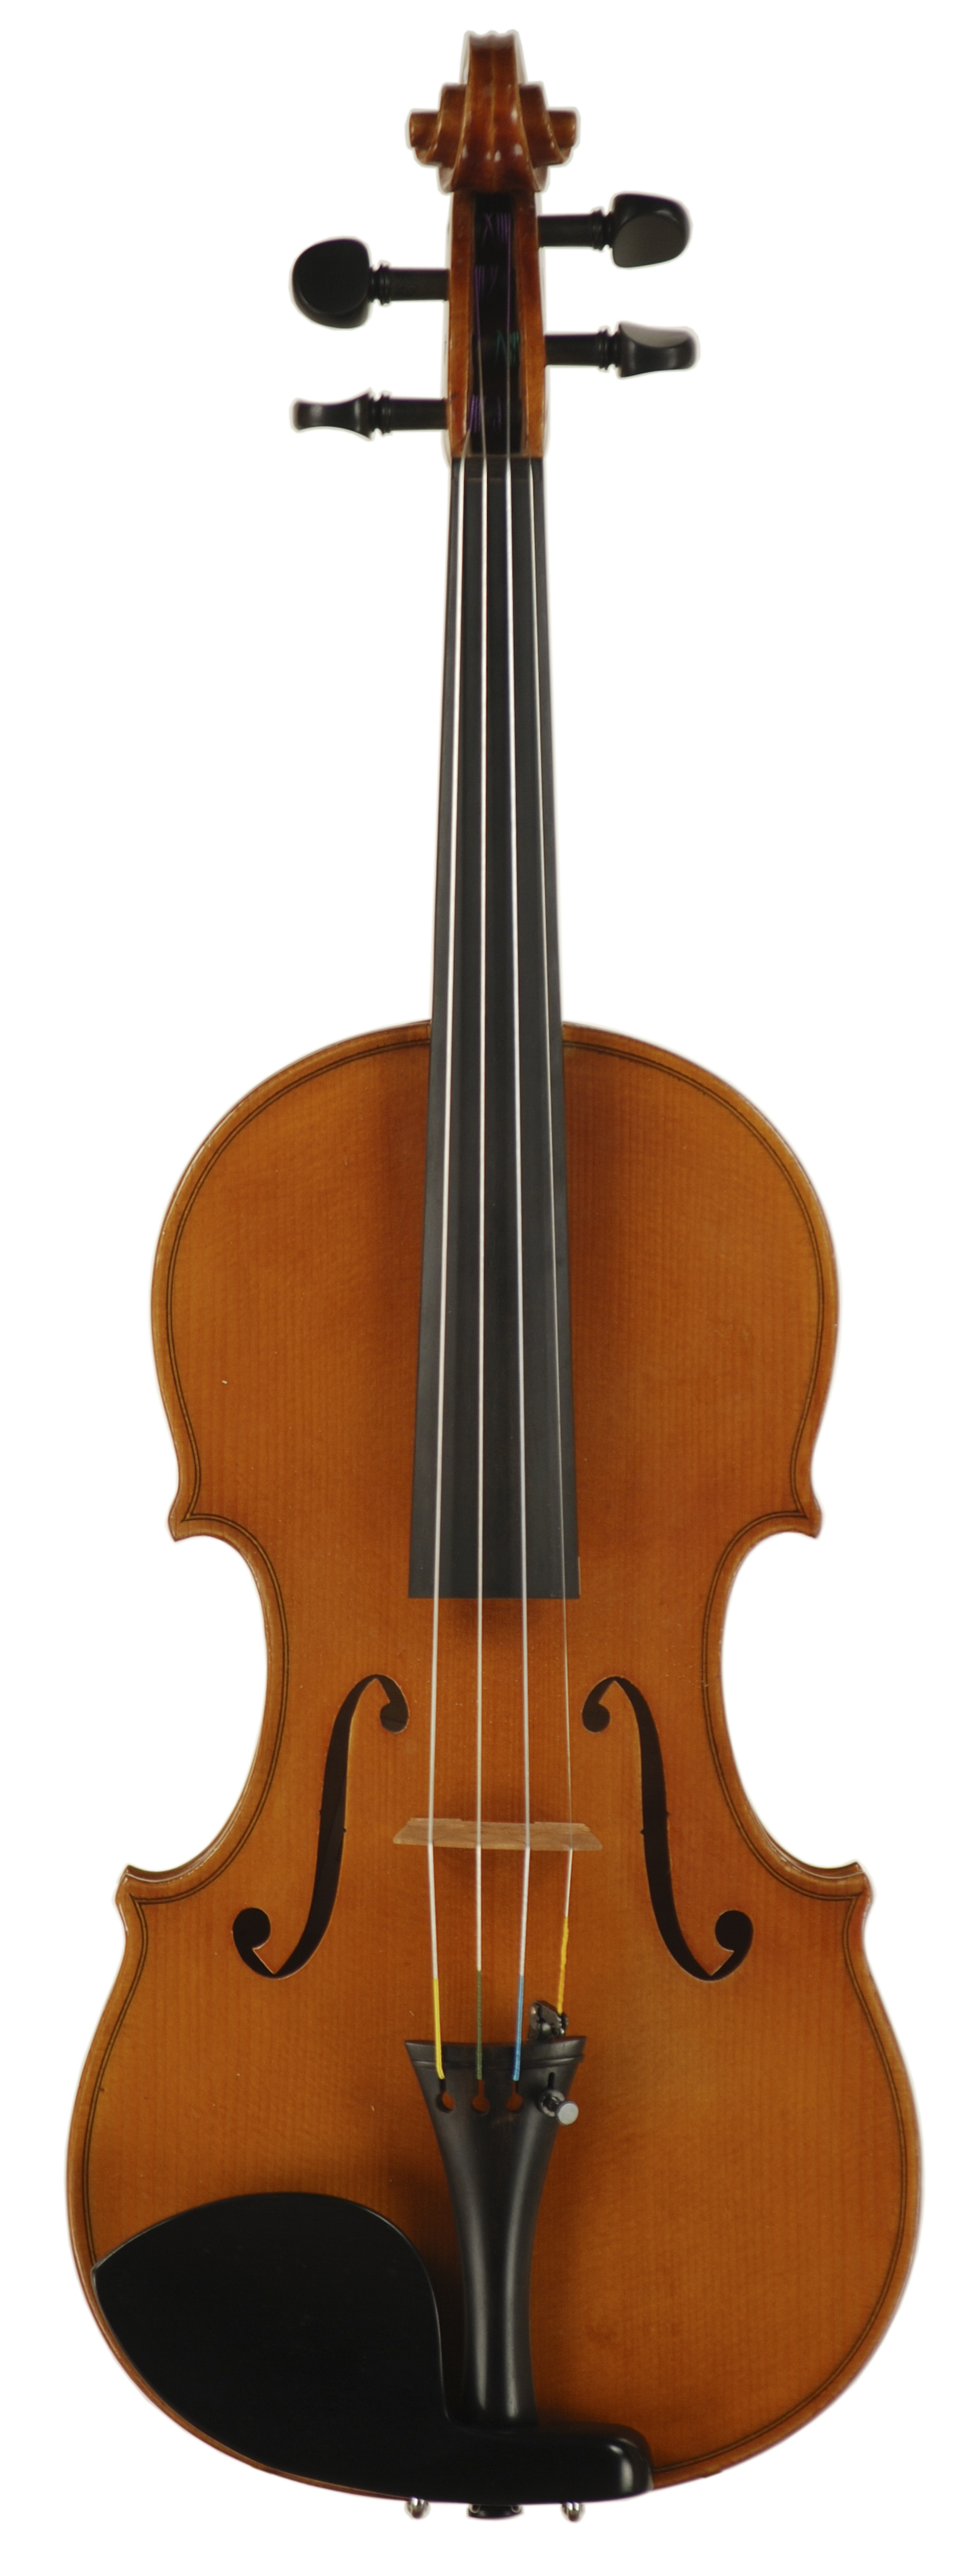 Josef Bitterer- Workshop Violin, circa 1960